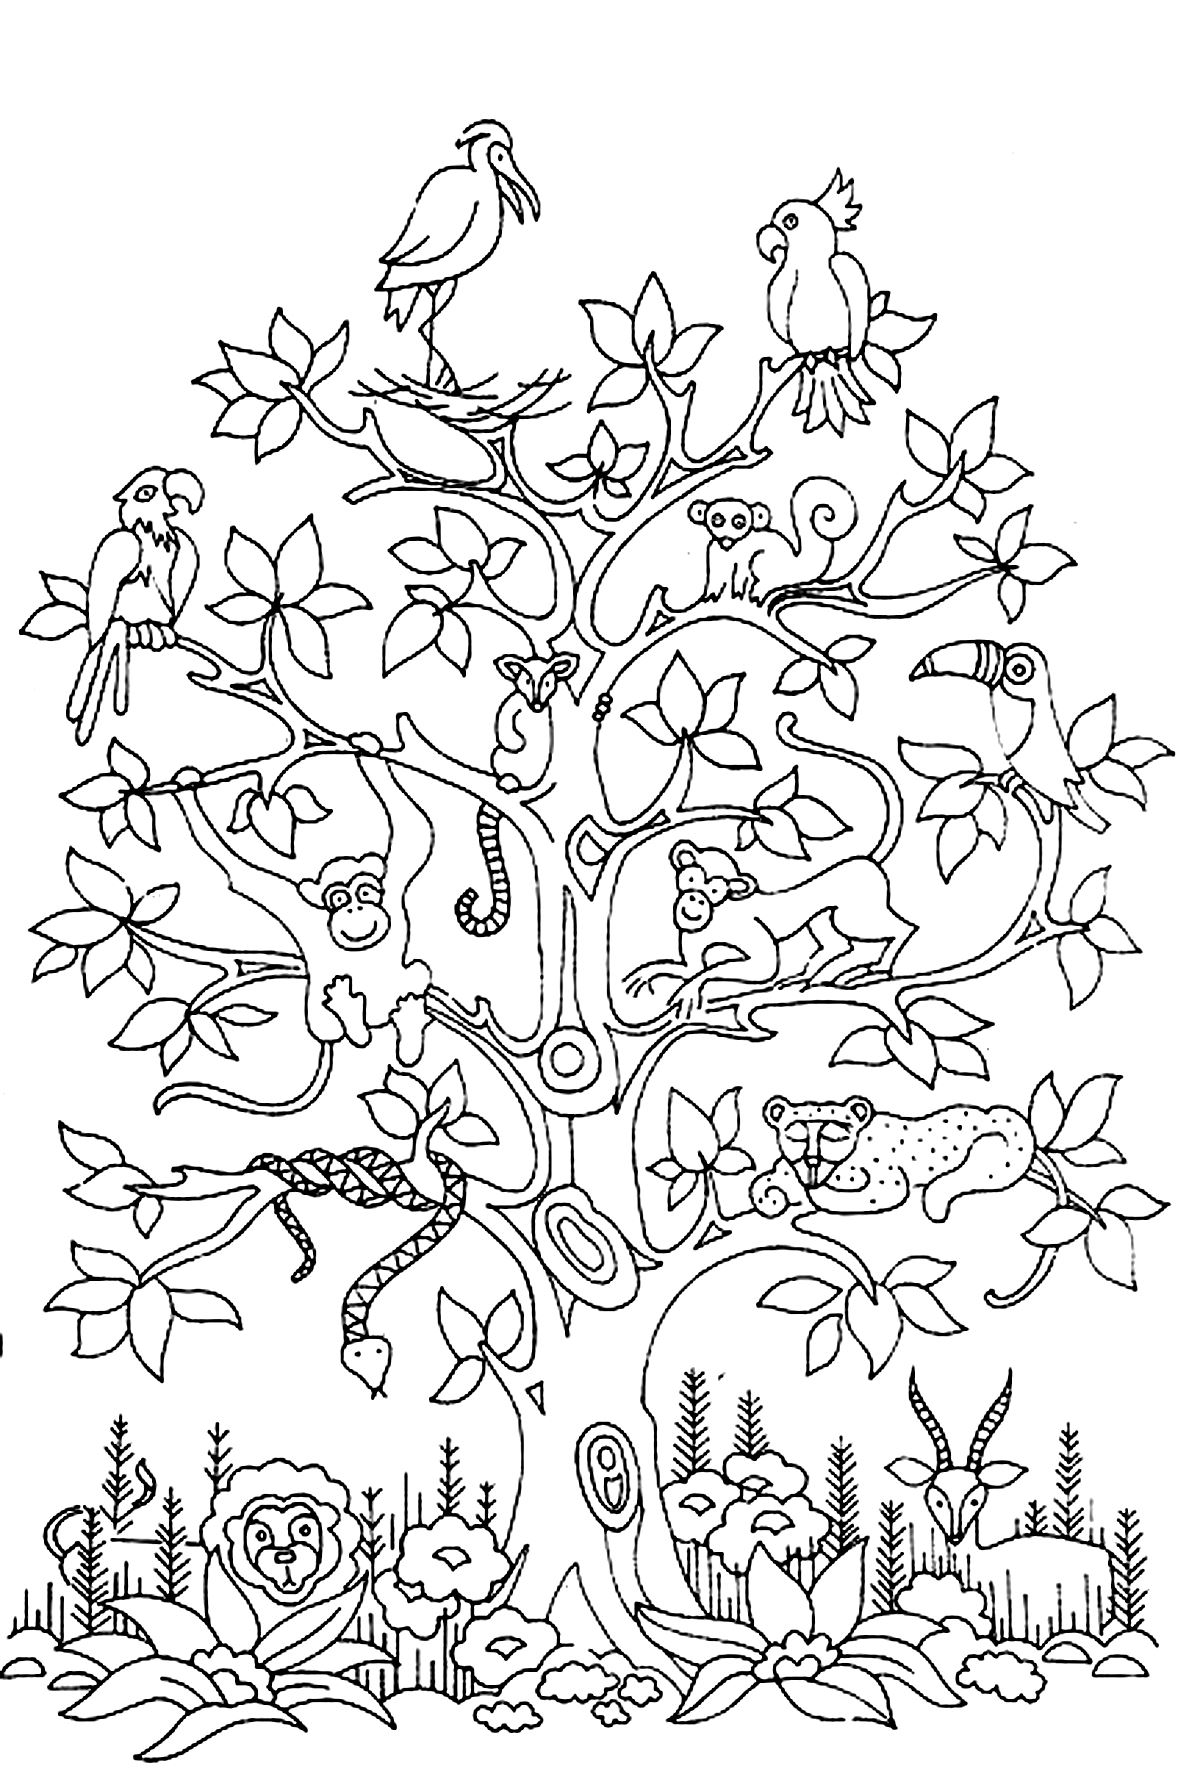 Árvore com pássaros, cobras e macacos. Colorir esta bela árvore e os animais que lhe chamam casa.